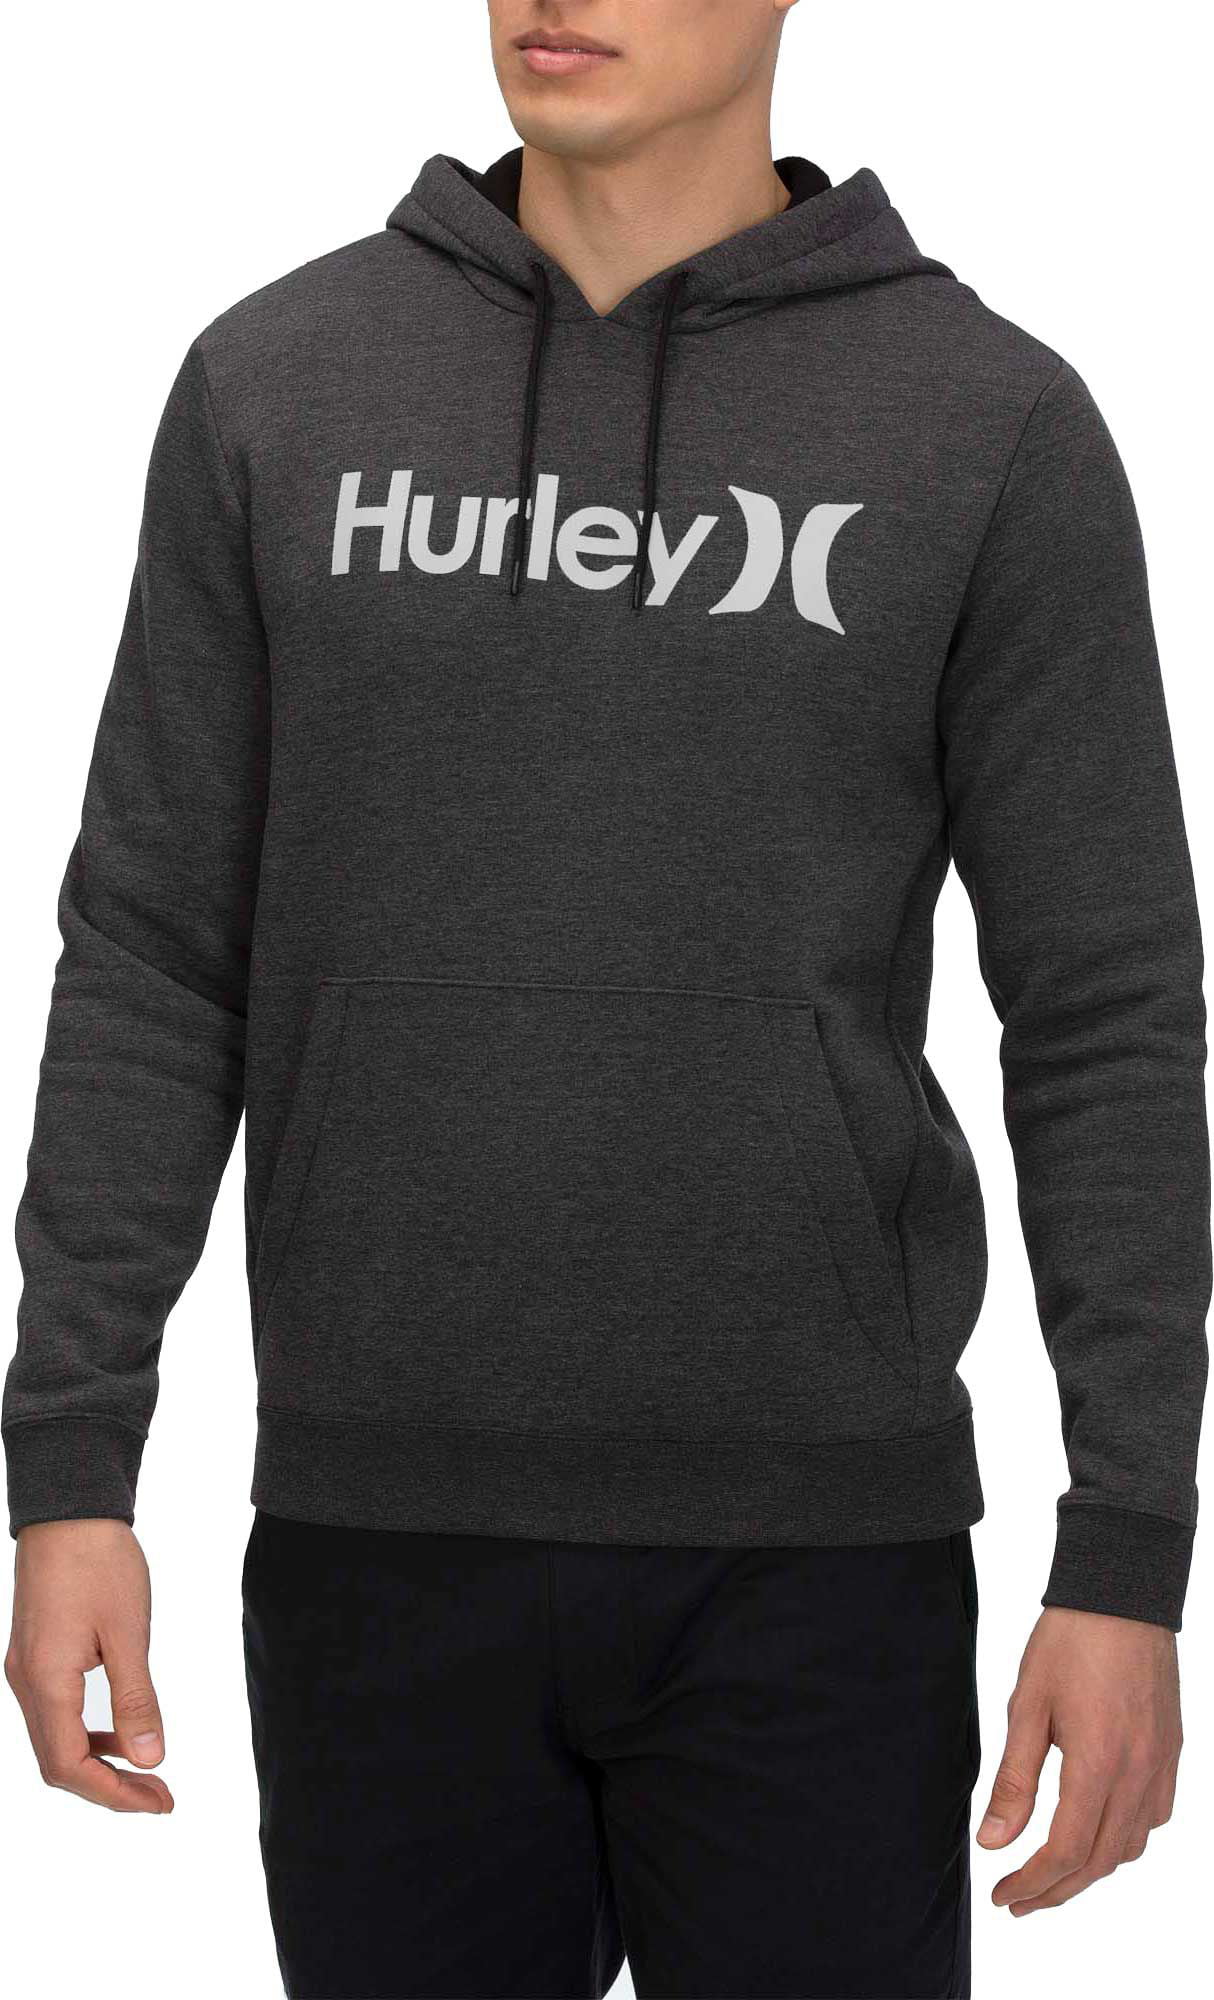 Hurley - Hurley Men's Surf Check Hoodie - Walmart.com - Walmart.com